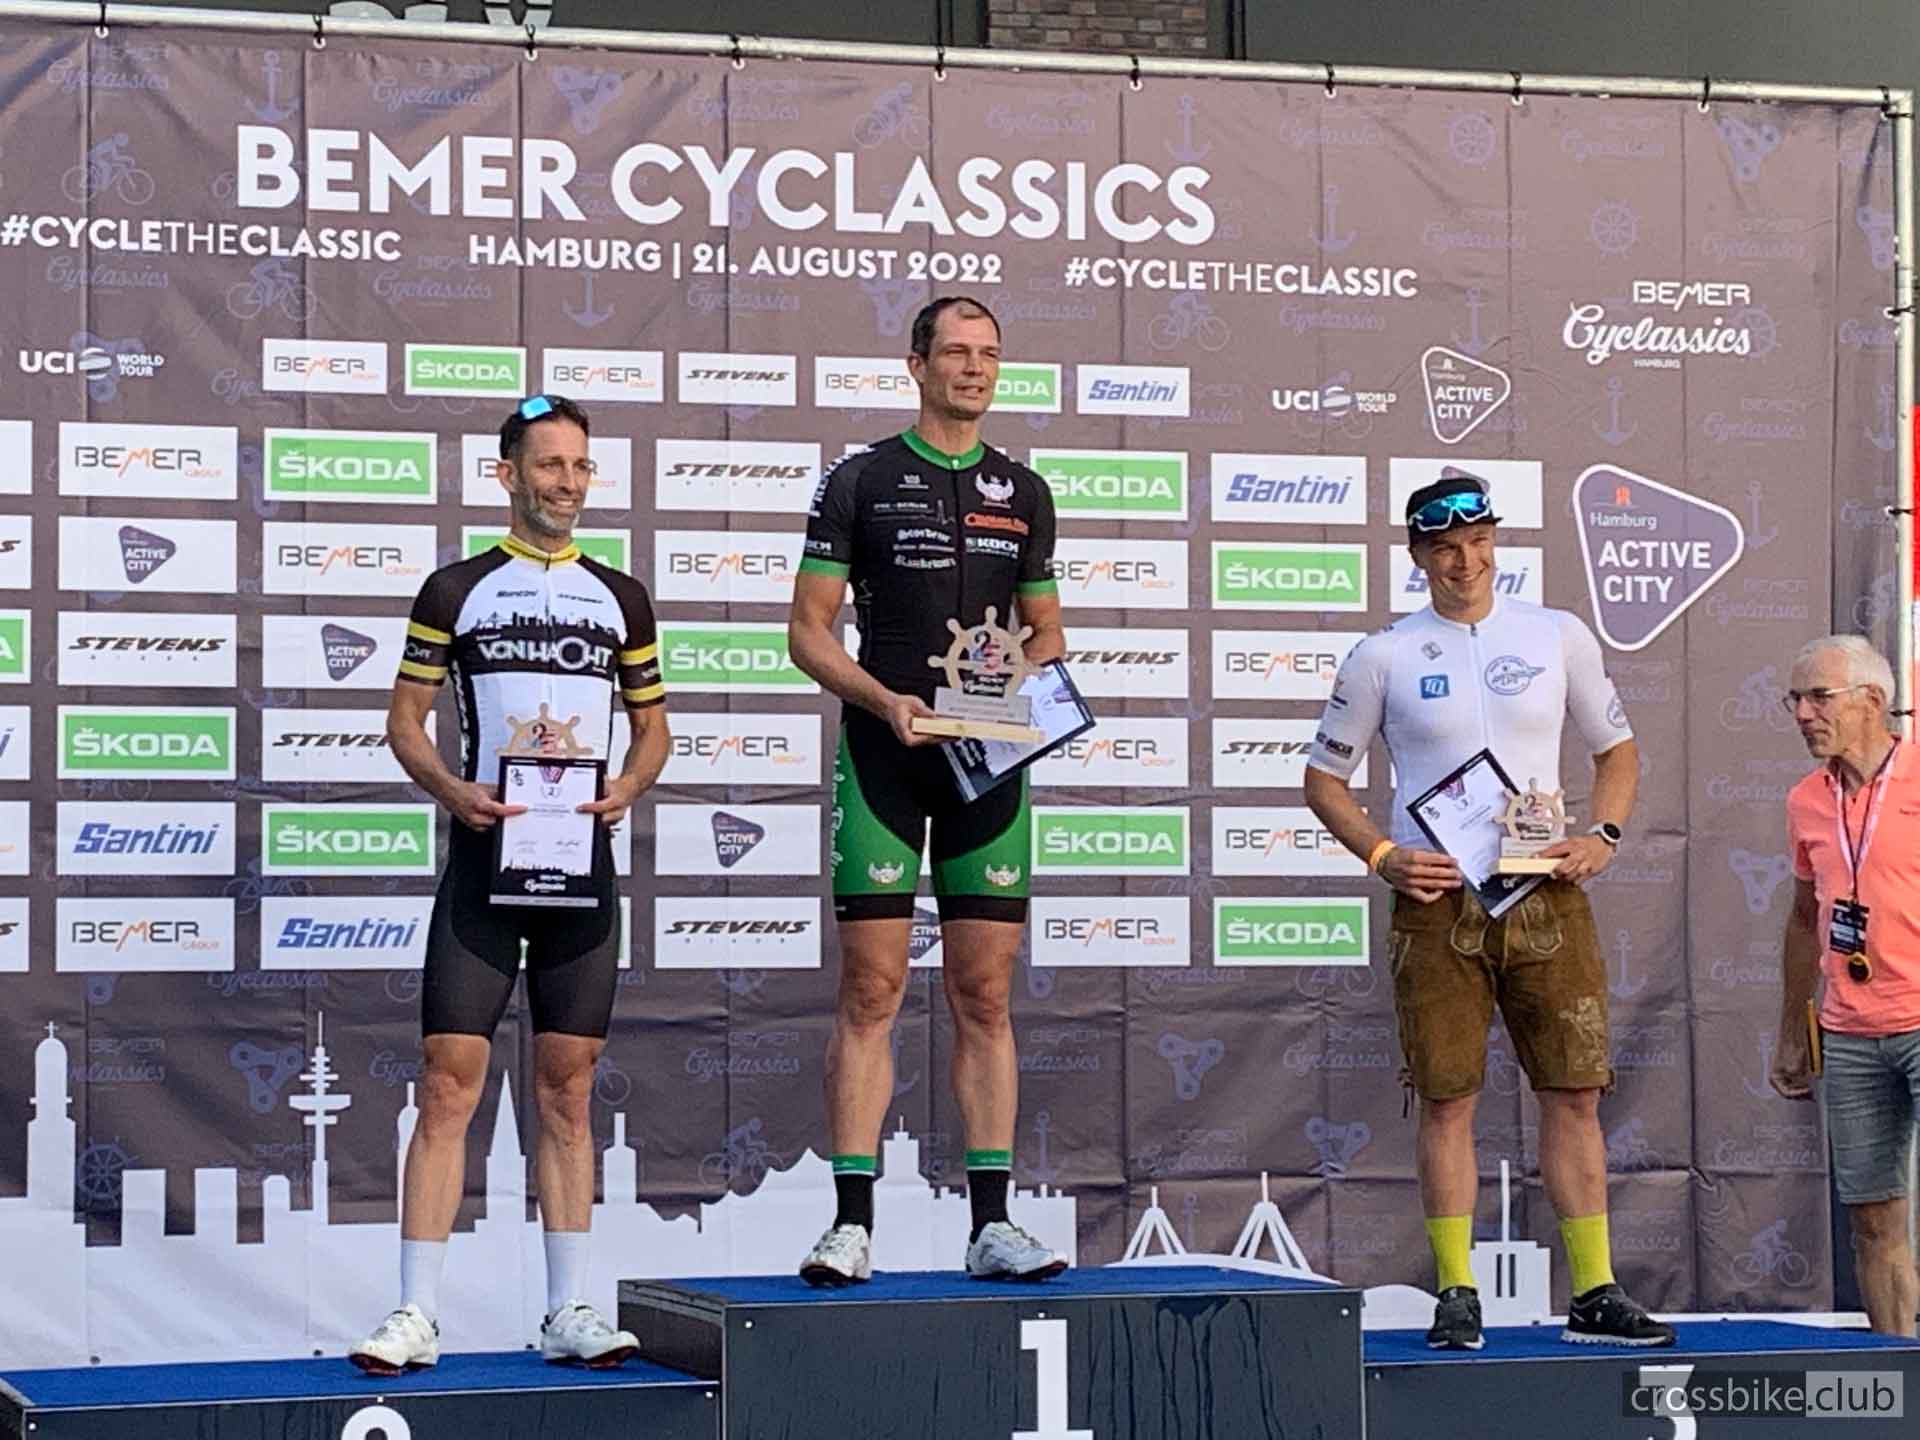 Siegerehrung der Männer BEMER Cyclassics 2022 - 100 km Runde